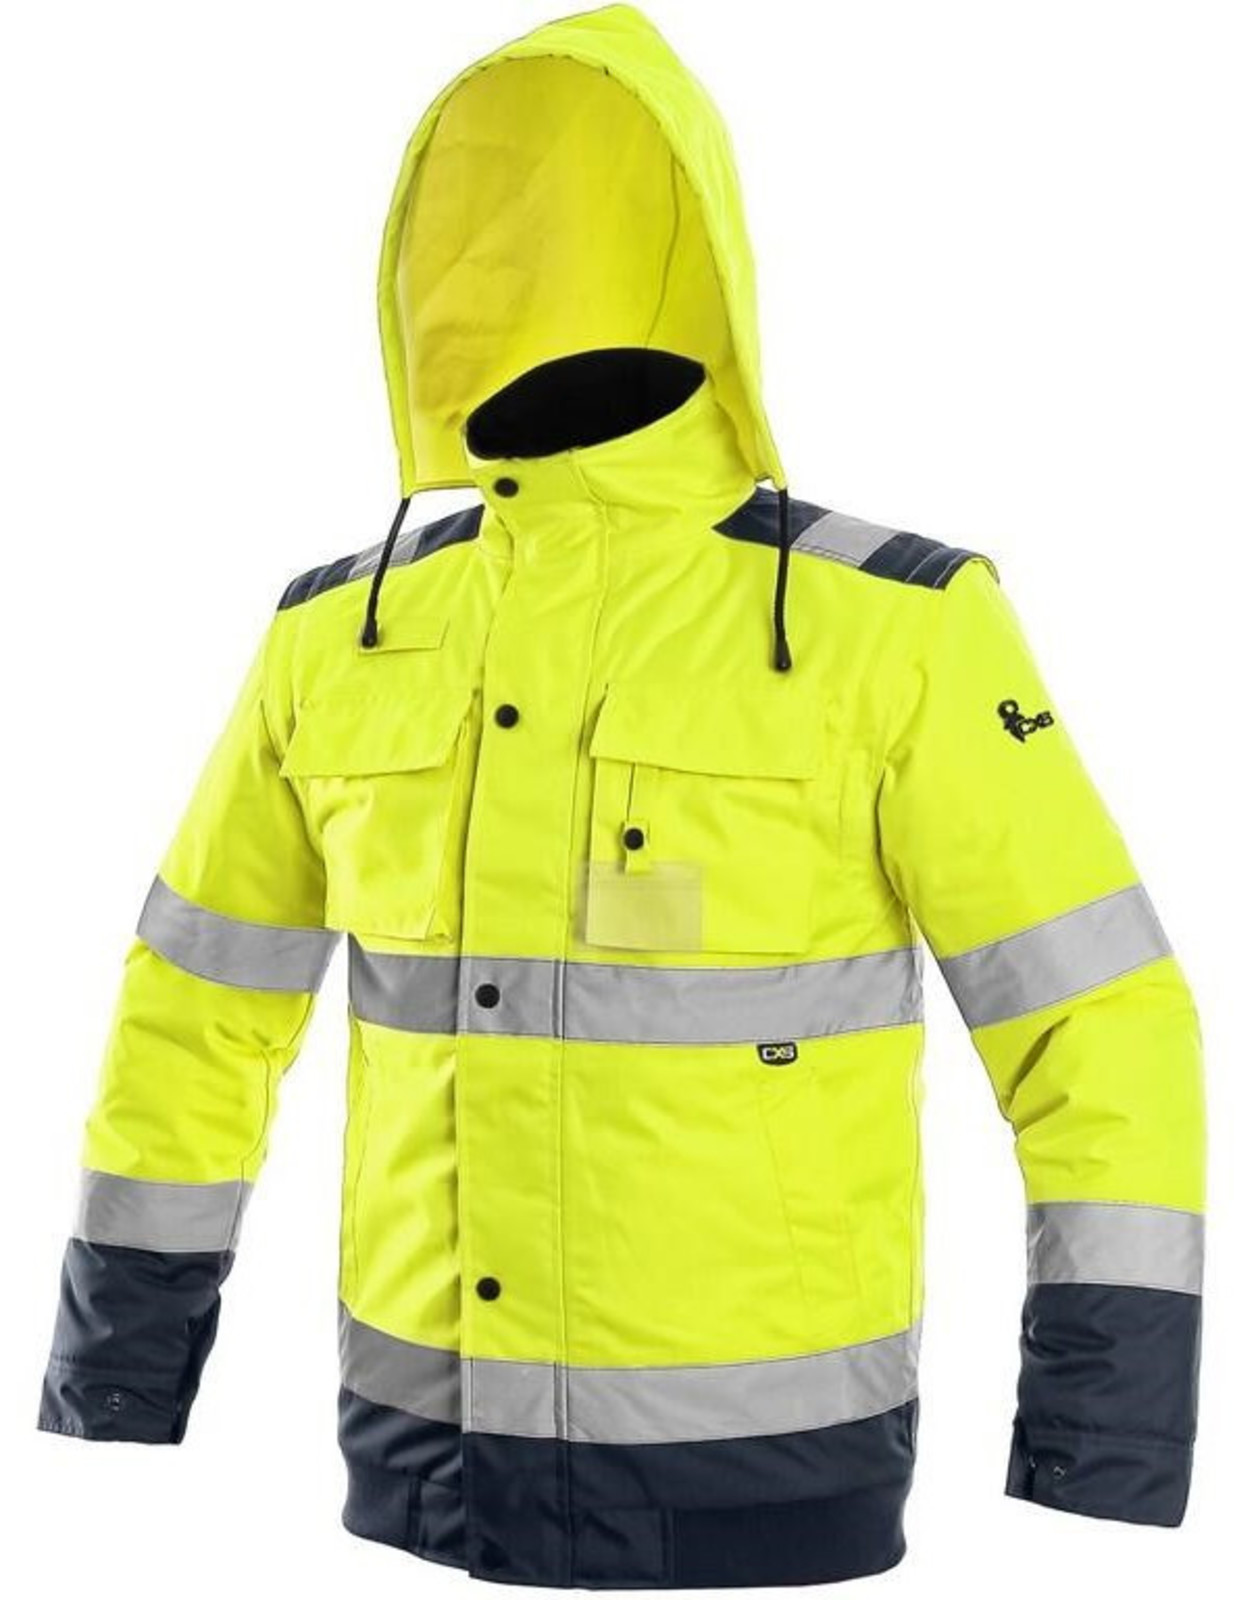 Zimná reflexná bunda CXS Luton 2v1 - veľkosť: 4XL, farba: žltá/navy